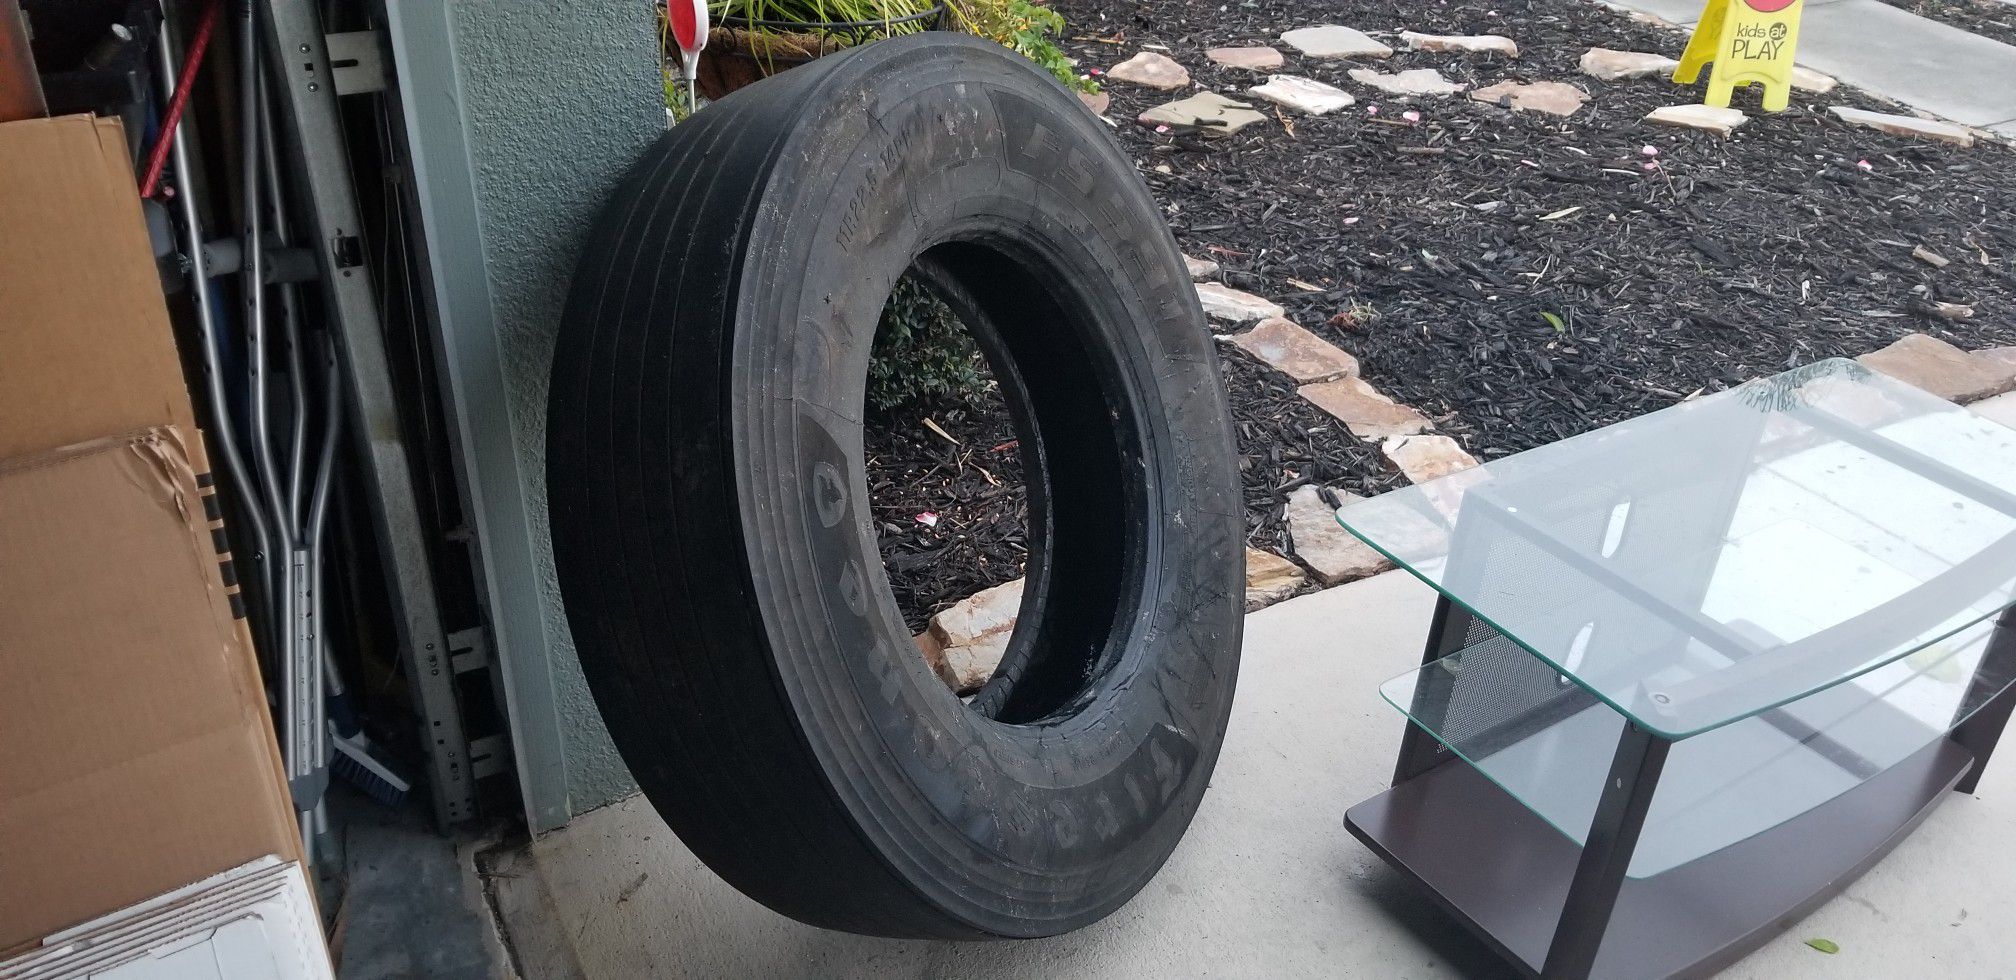 Fs591 11r 22.5 14pr firestone free tire